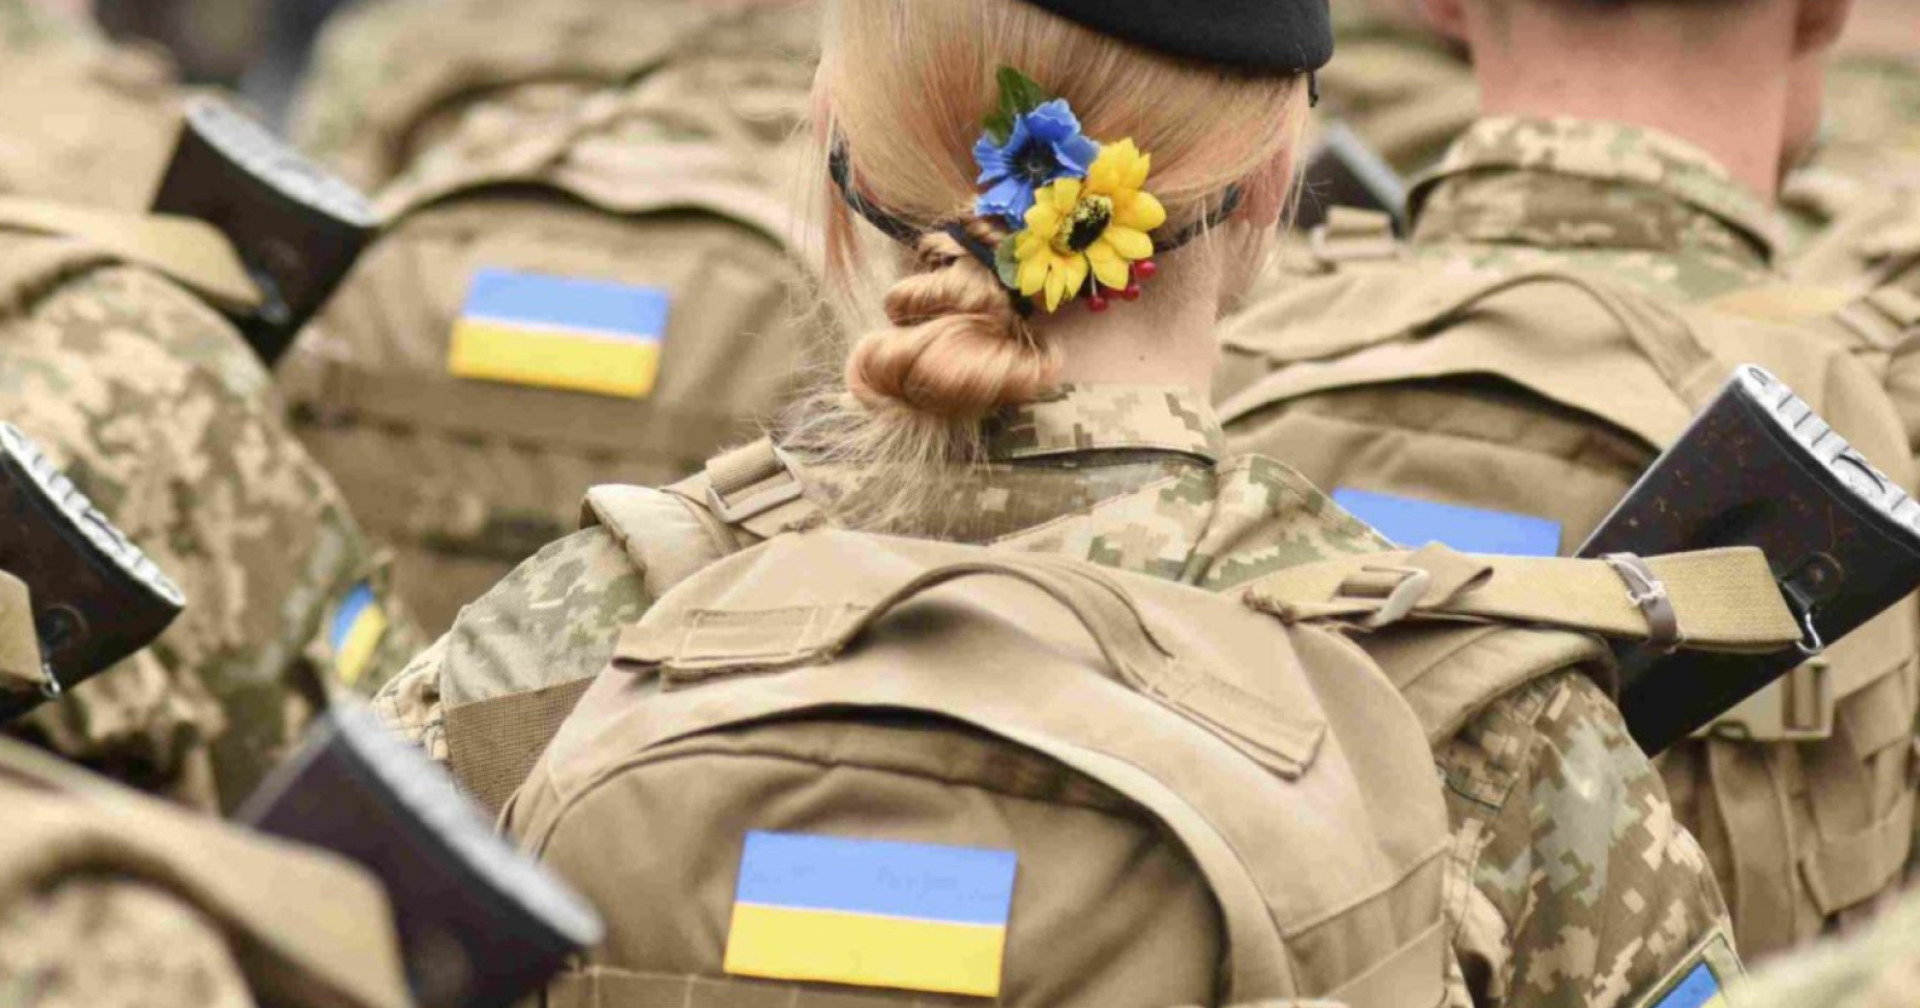 ยูเครนประกาศสร้างกองทัพไอทีต่อสู้ทางไซเบอร์กับรัสเซีย